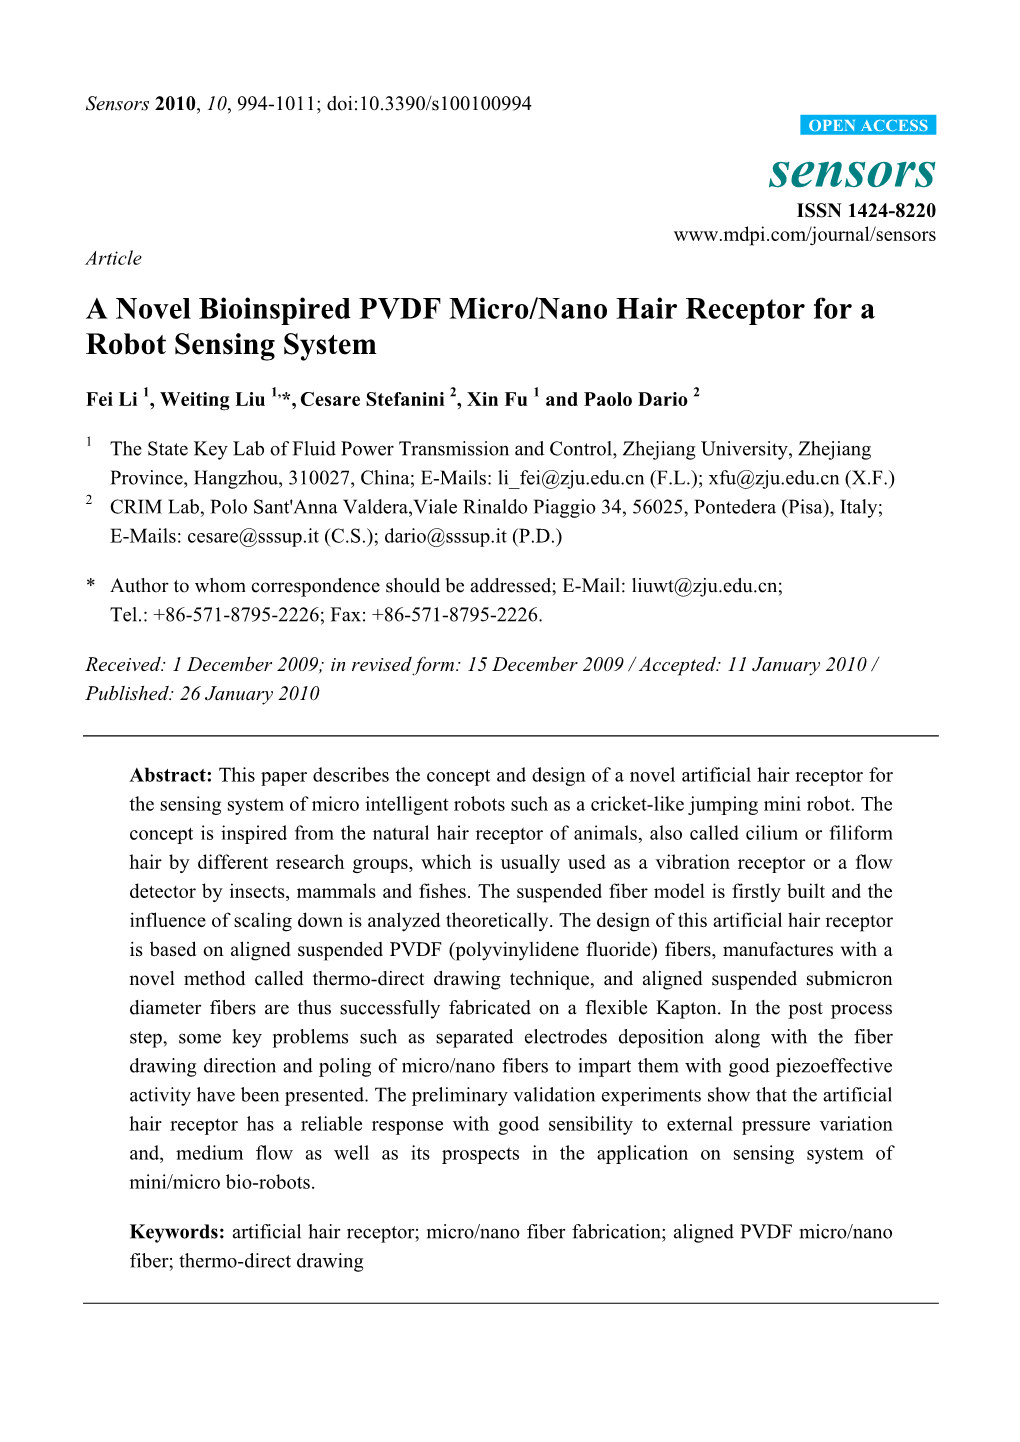 A Novel Bioinspired PVDF Micro/Nano Hair Receptor for a Robot Sensing System